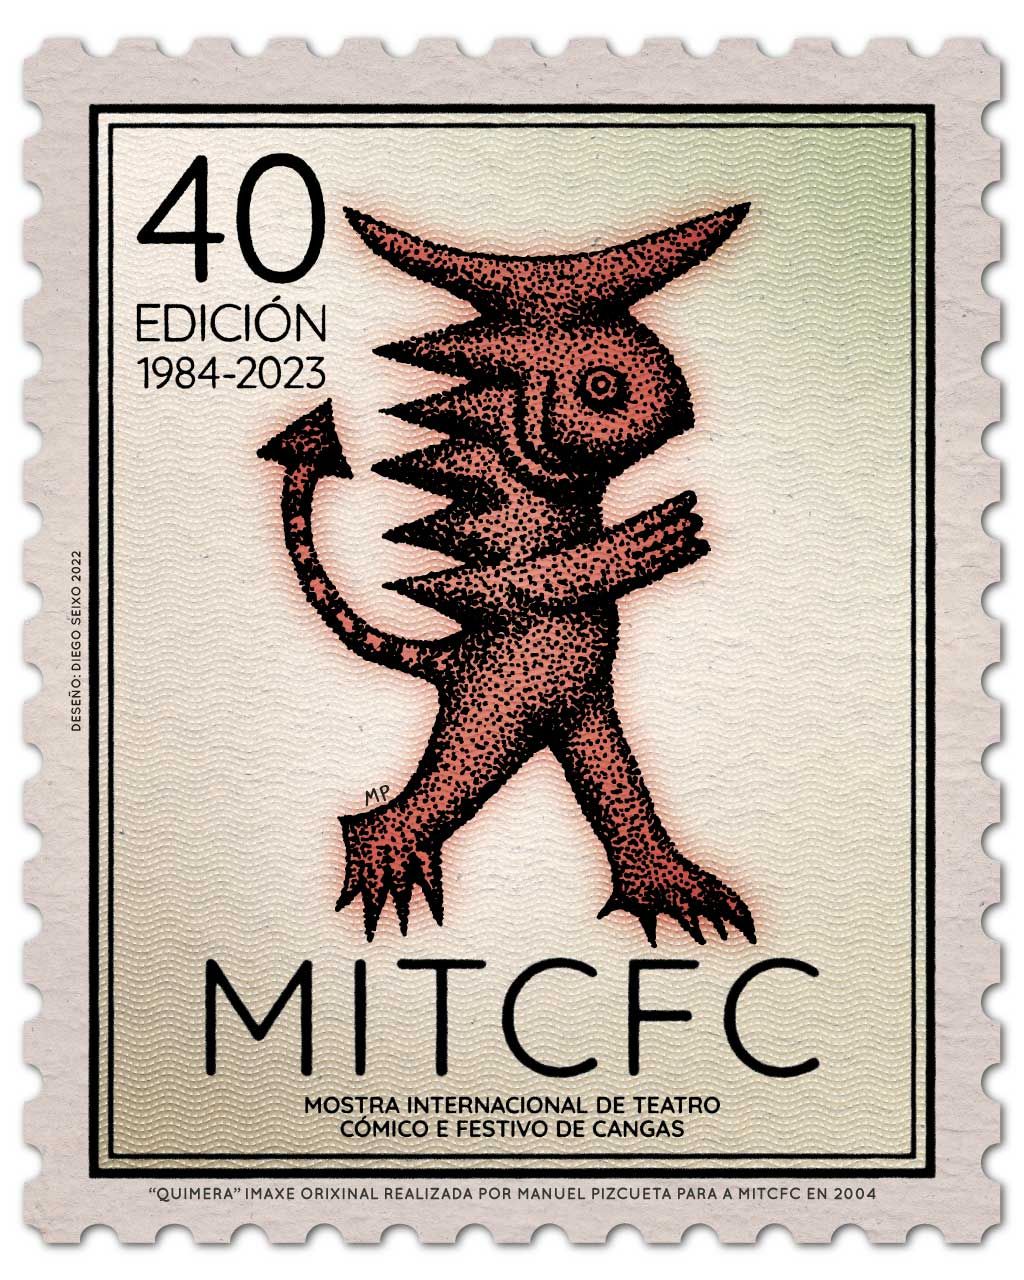 Selo 40 MITCFC a partir do logotipo orixinal de Manuel Pizcueta